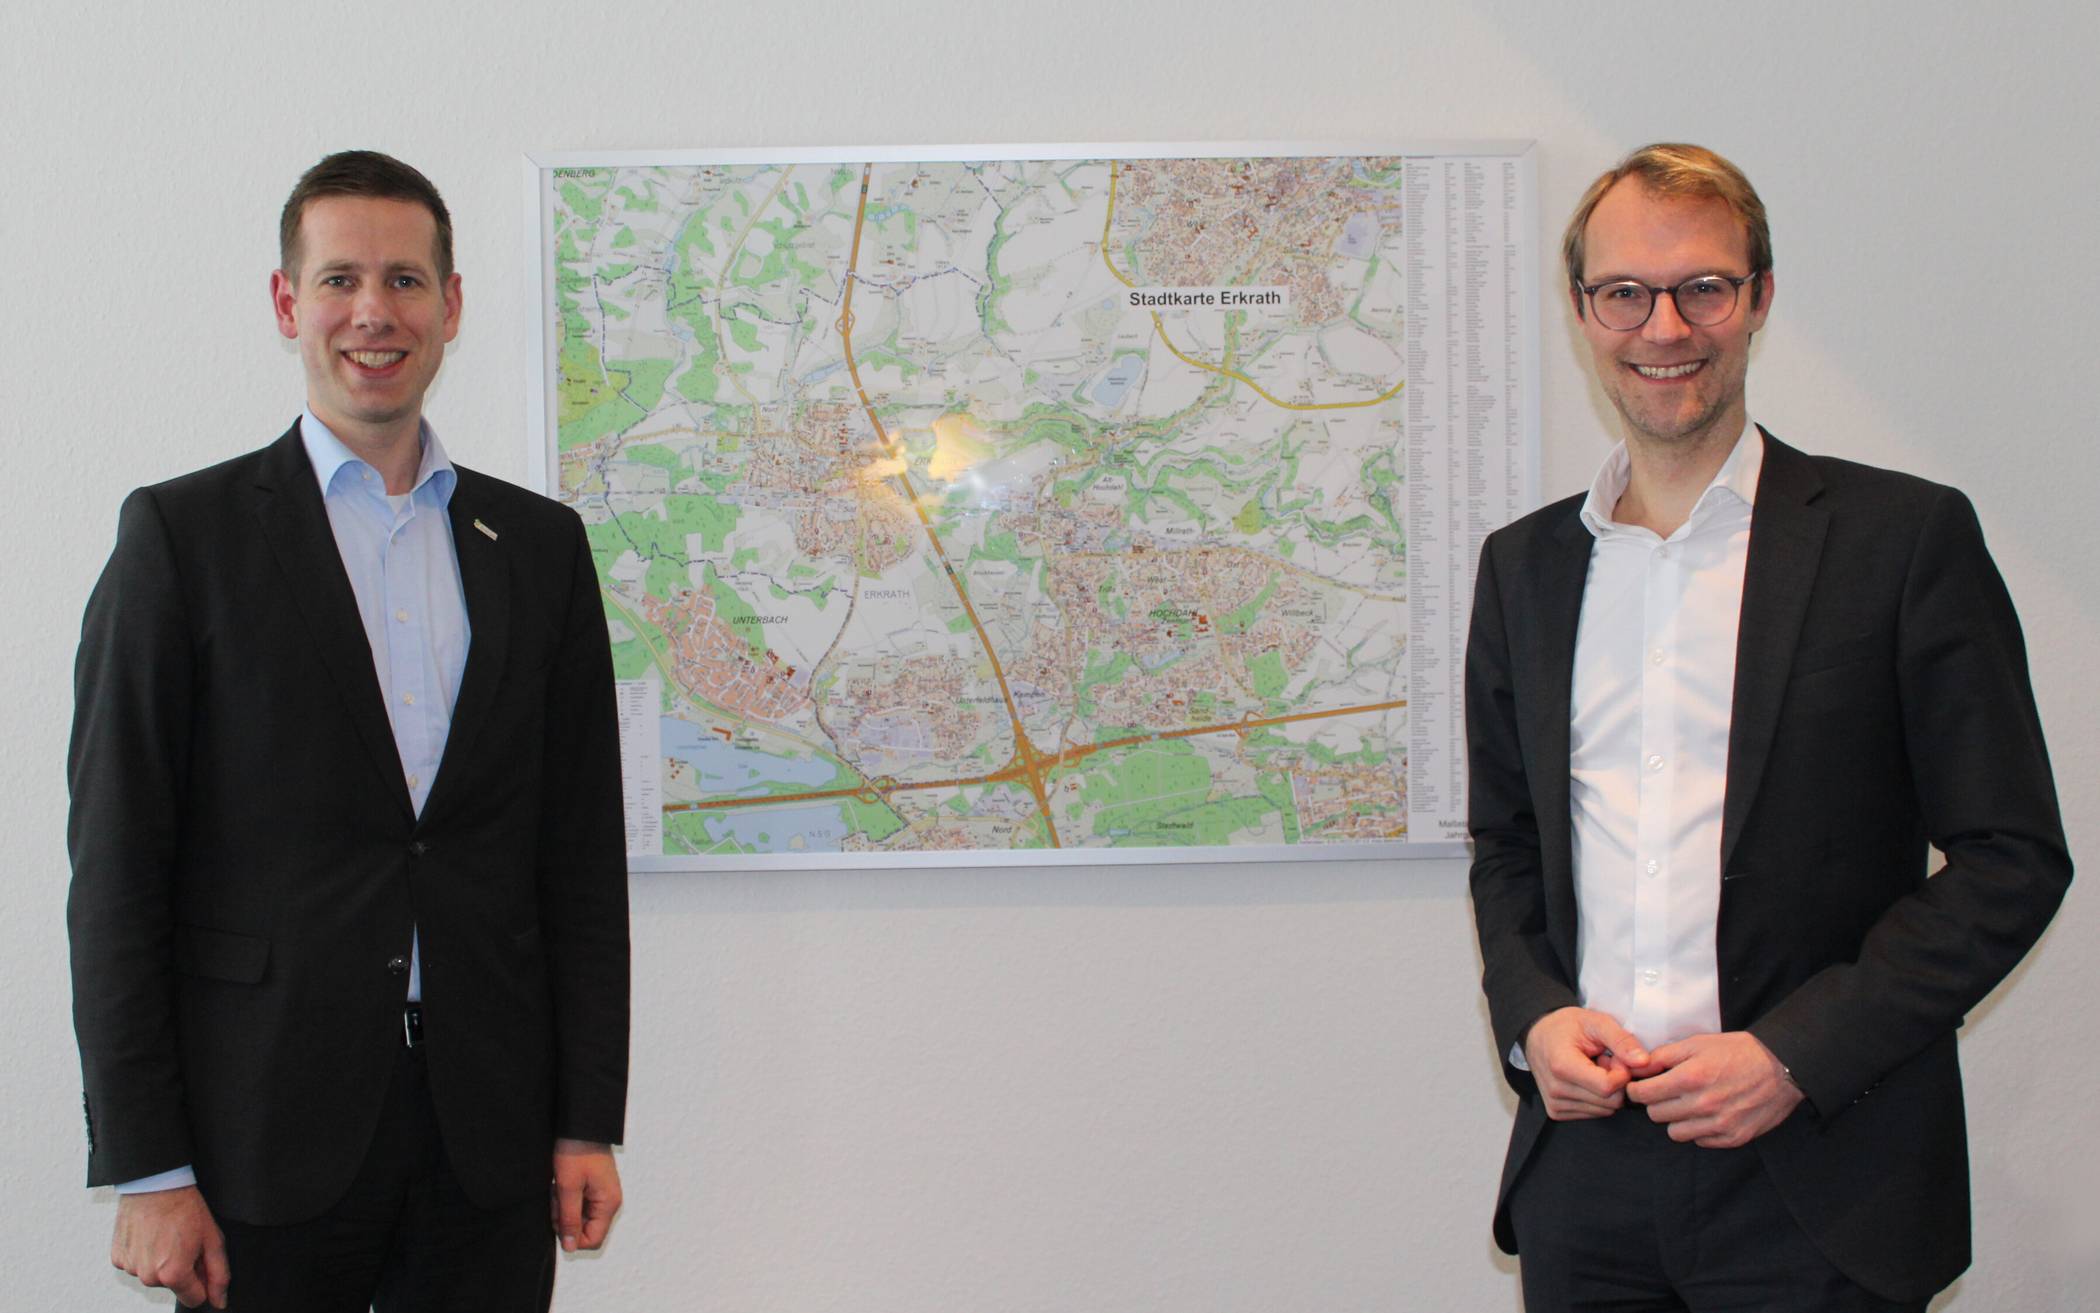  Bürgermeister Christoph Schultz (li.) und Landtagsabgeordneter Dr. Christian Untrieser trafen sich im Erkrather Rathaus zum Gespräch. 
  